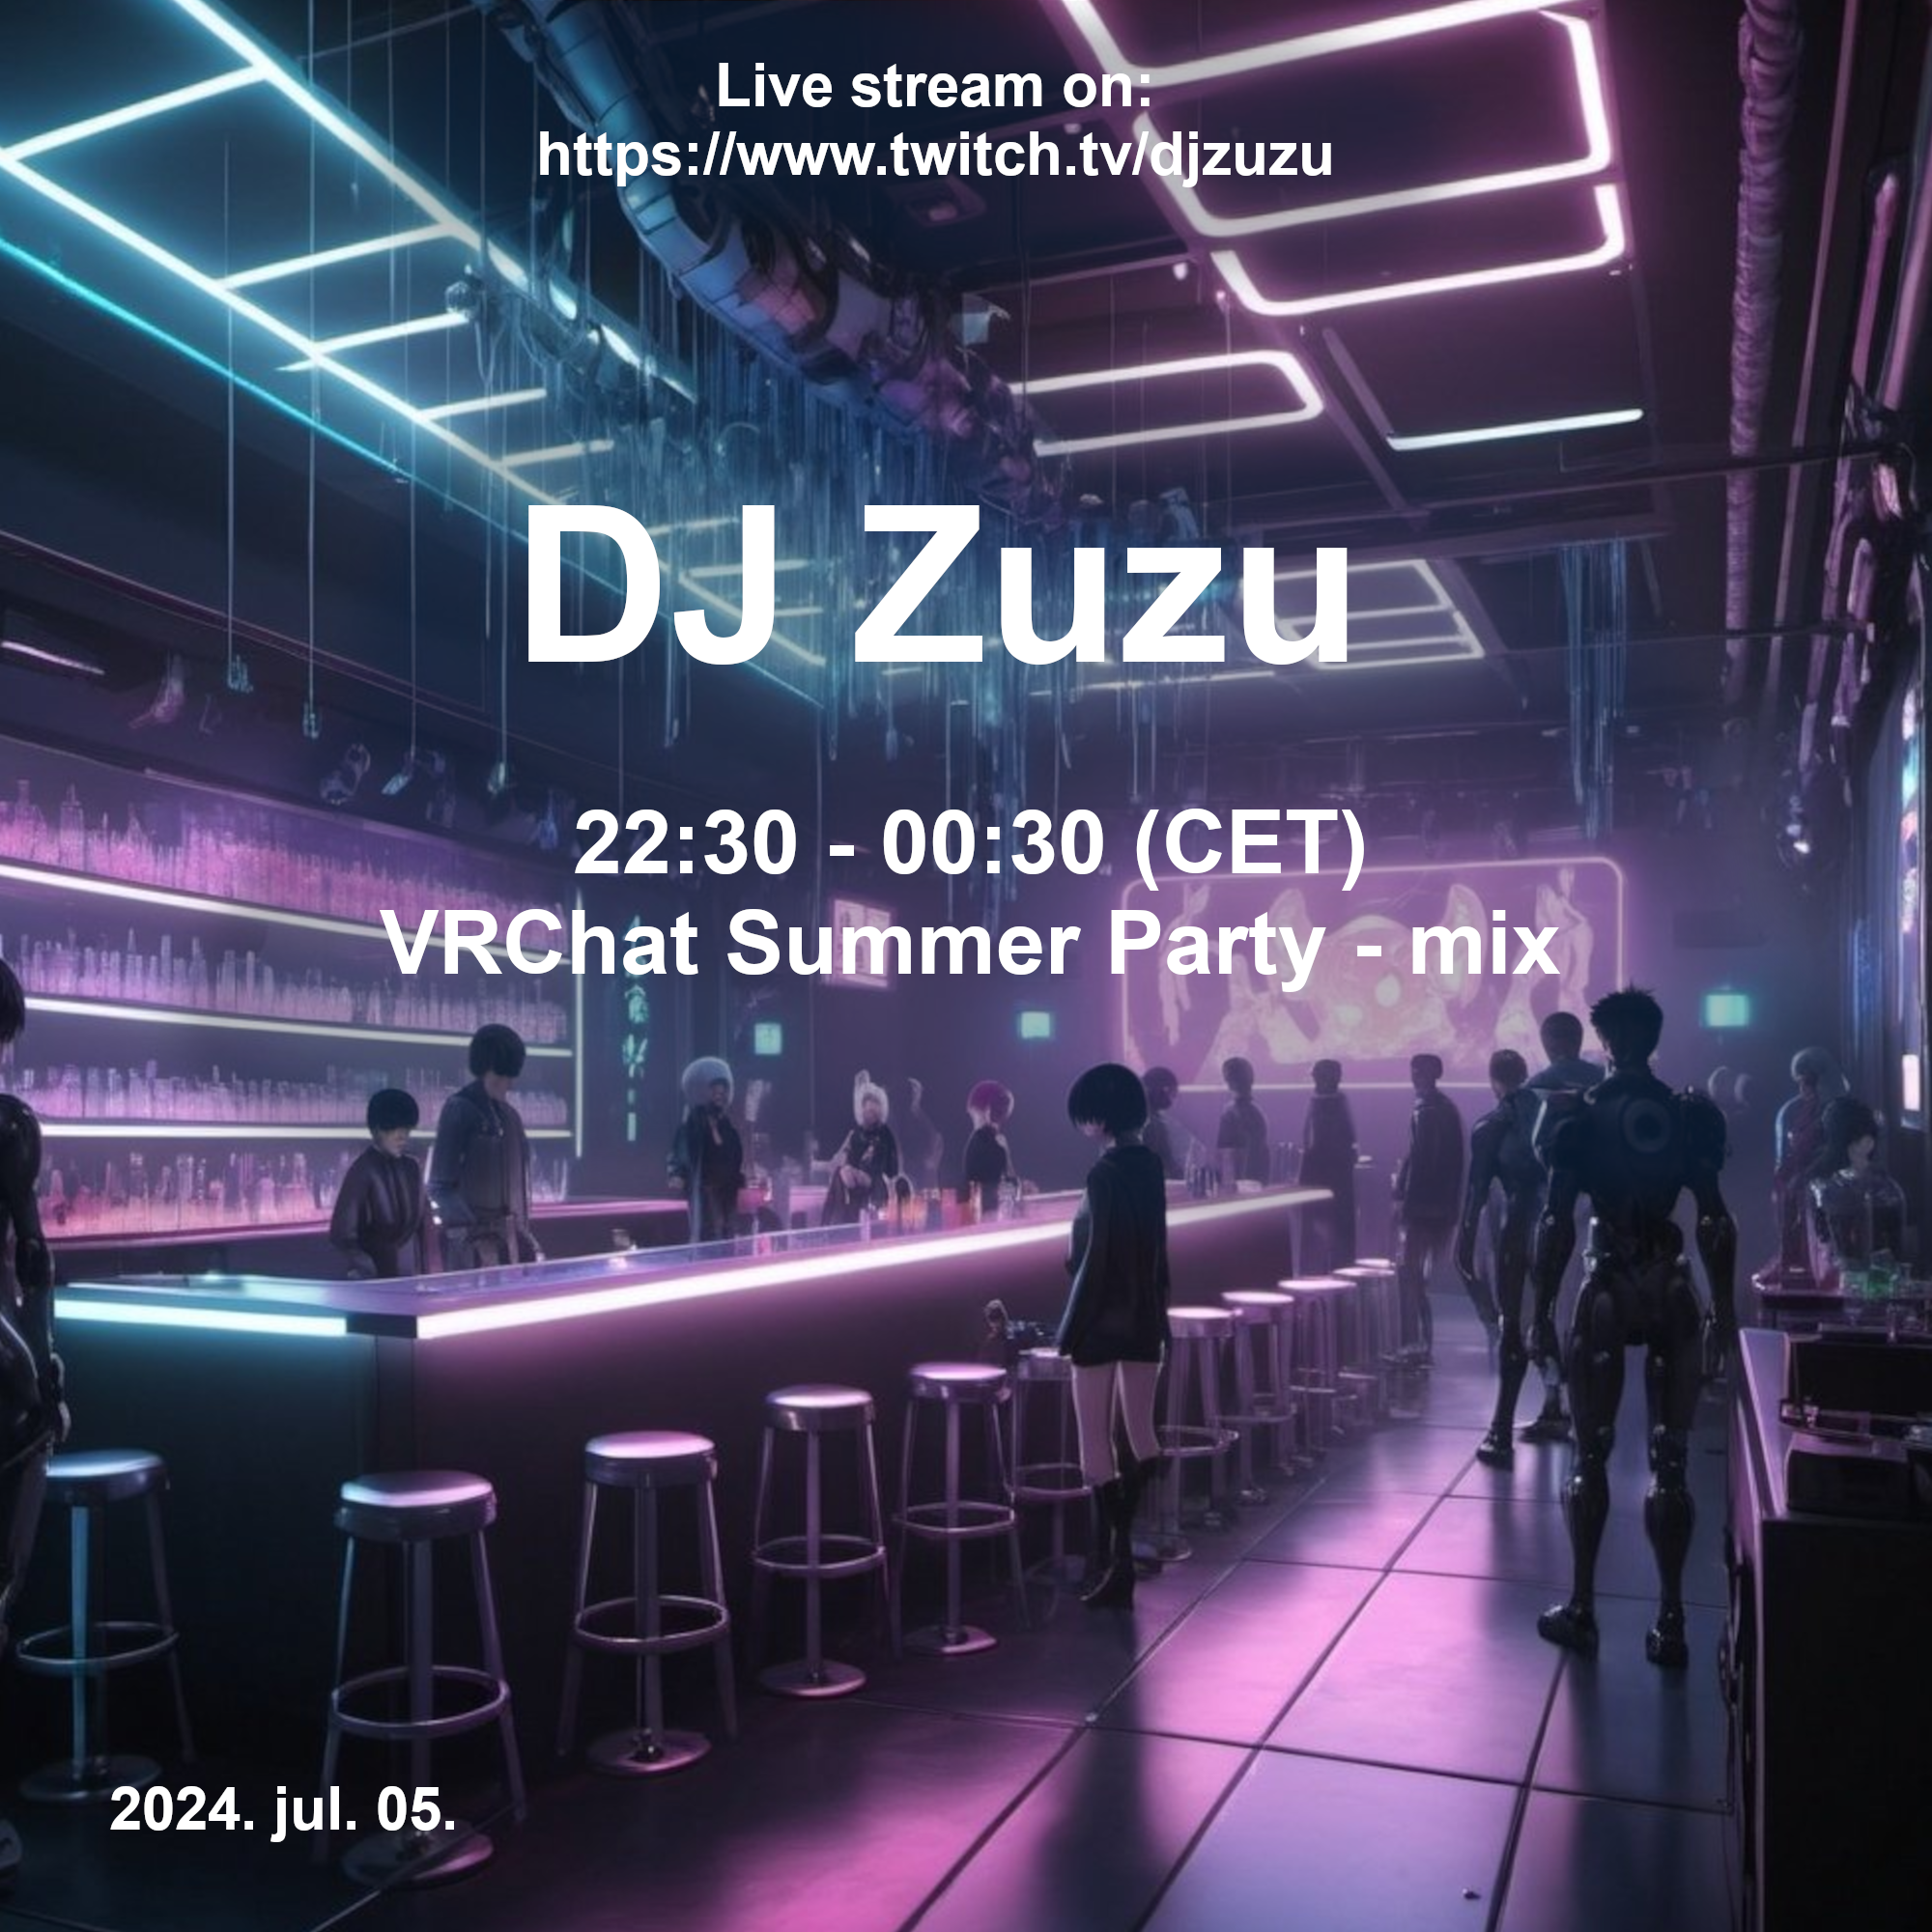 Dj Zuzu VRChat Summer Party event flyer 20240705